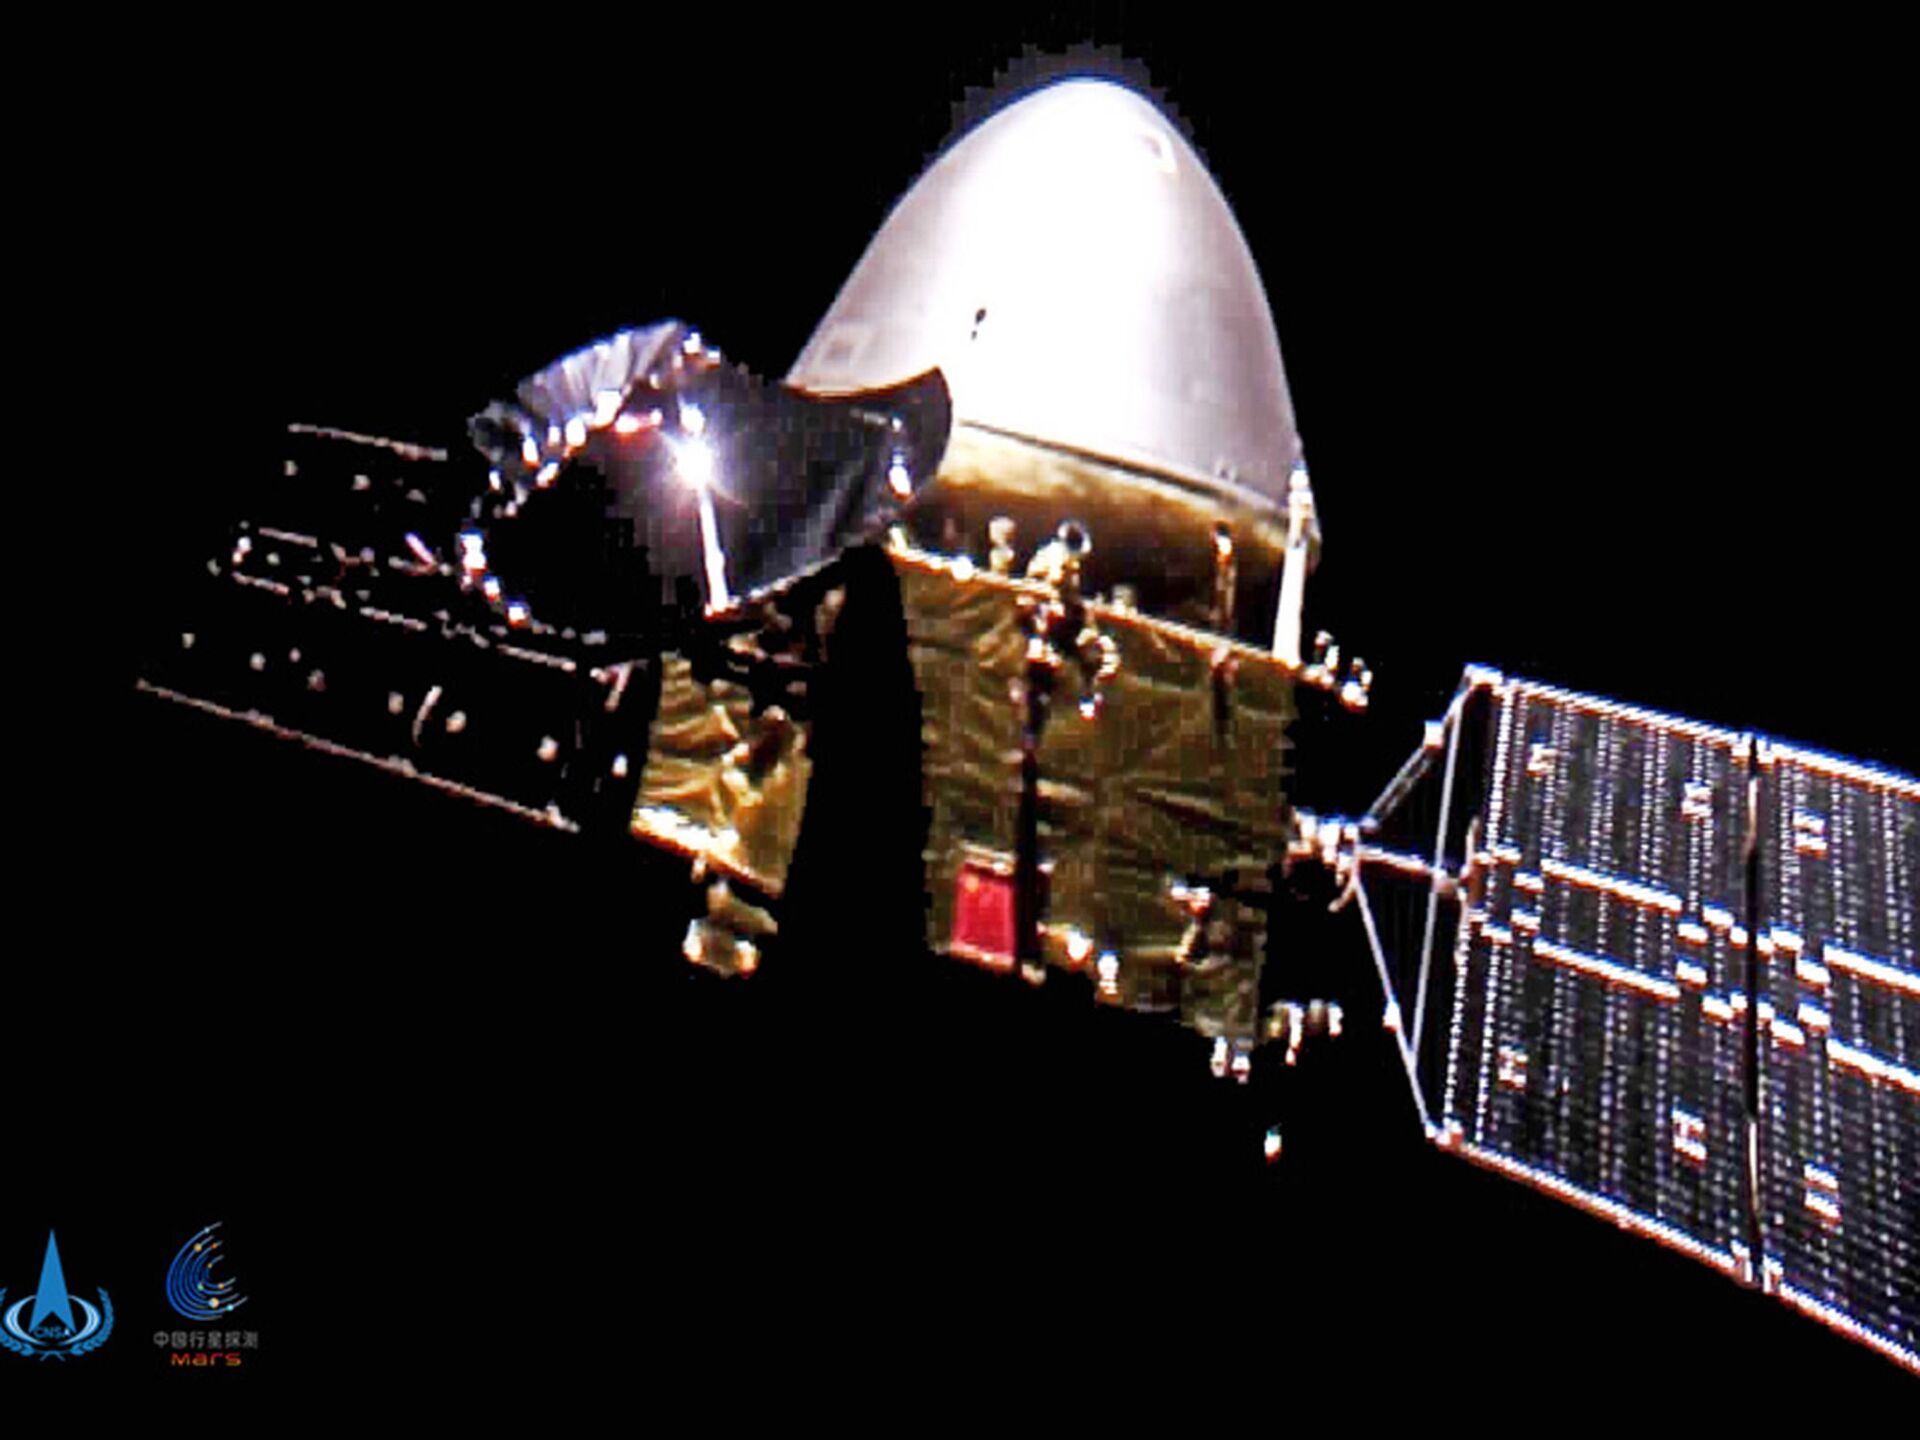 Sonda Tianwen-1 da China 'diz olá' e alcança órbita de Marte após meses de viagem - Sputnik Brasil, 1920, 10.02.2021